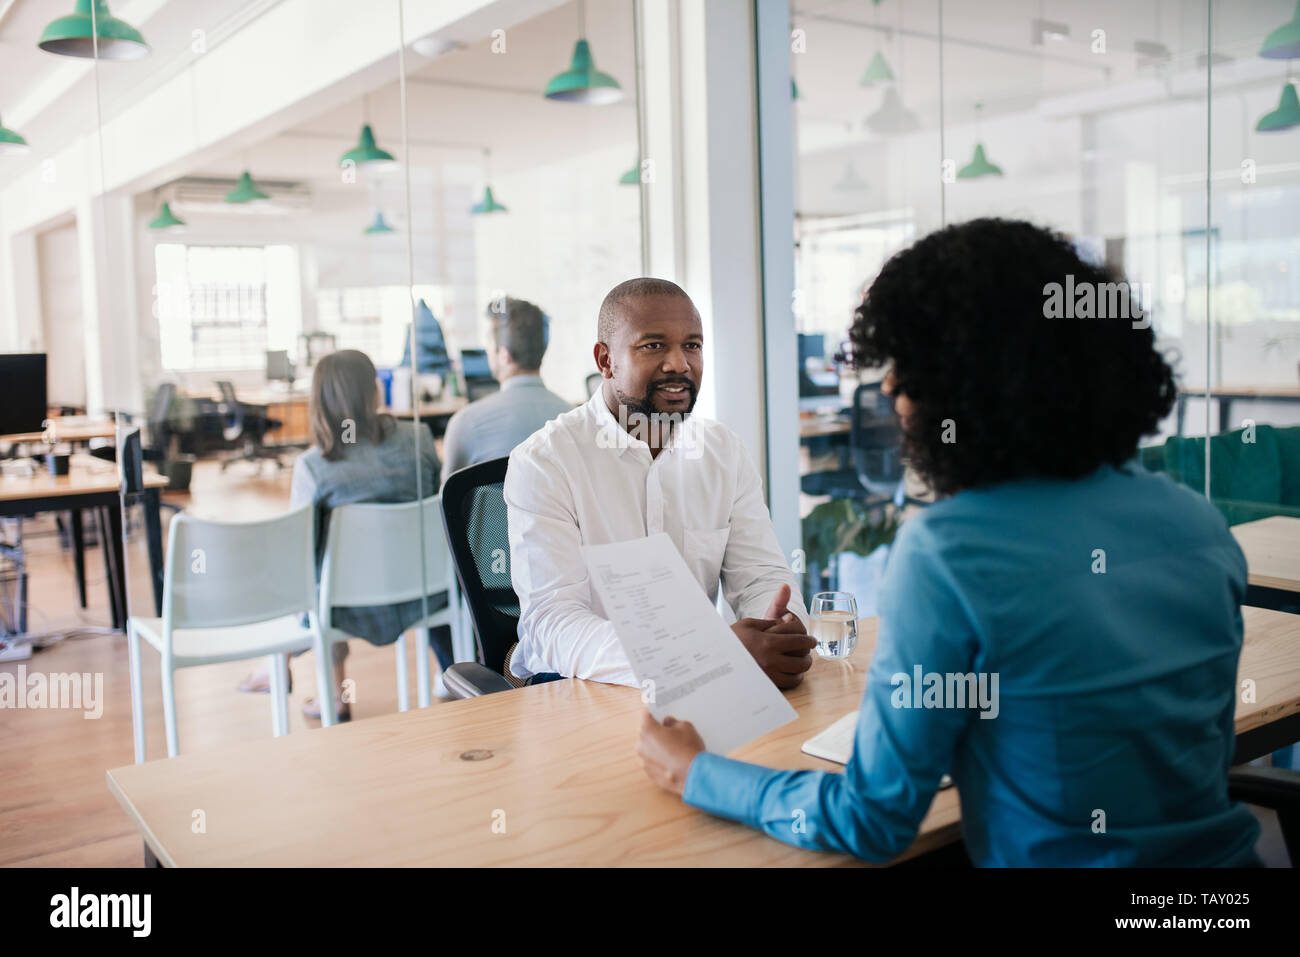 African American man smiling en répondant à des questions au cours d'un entretien avec un manager in a modern office Banque D'Images